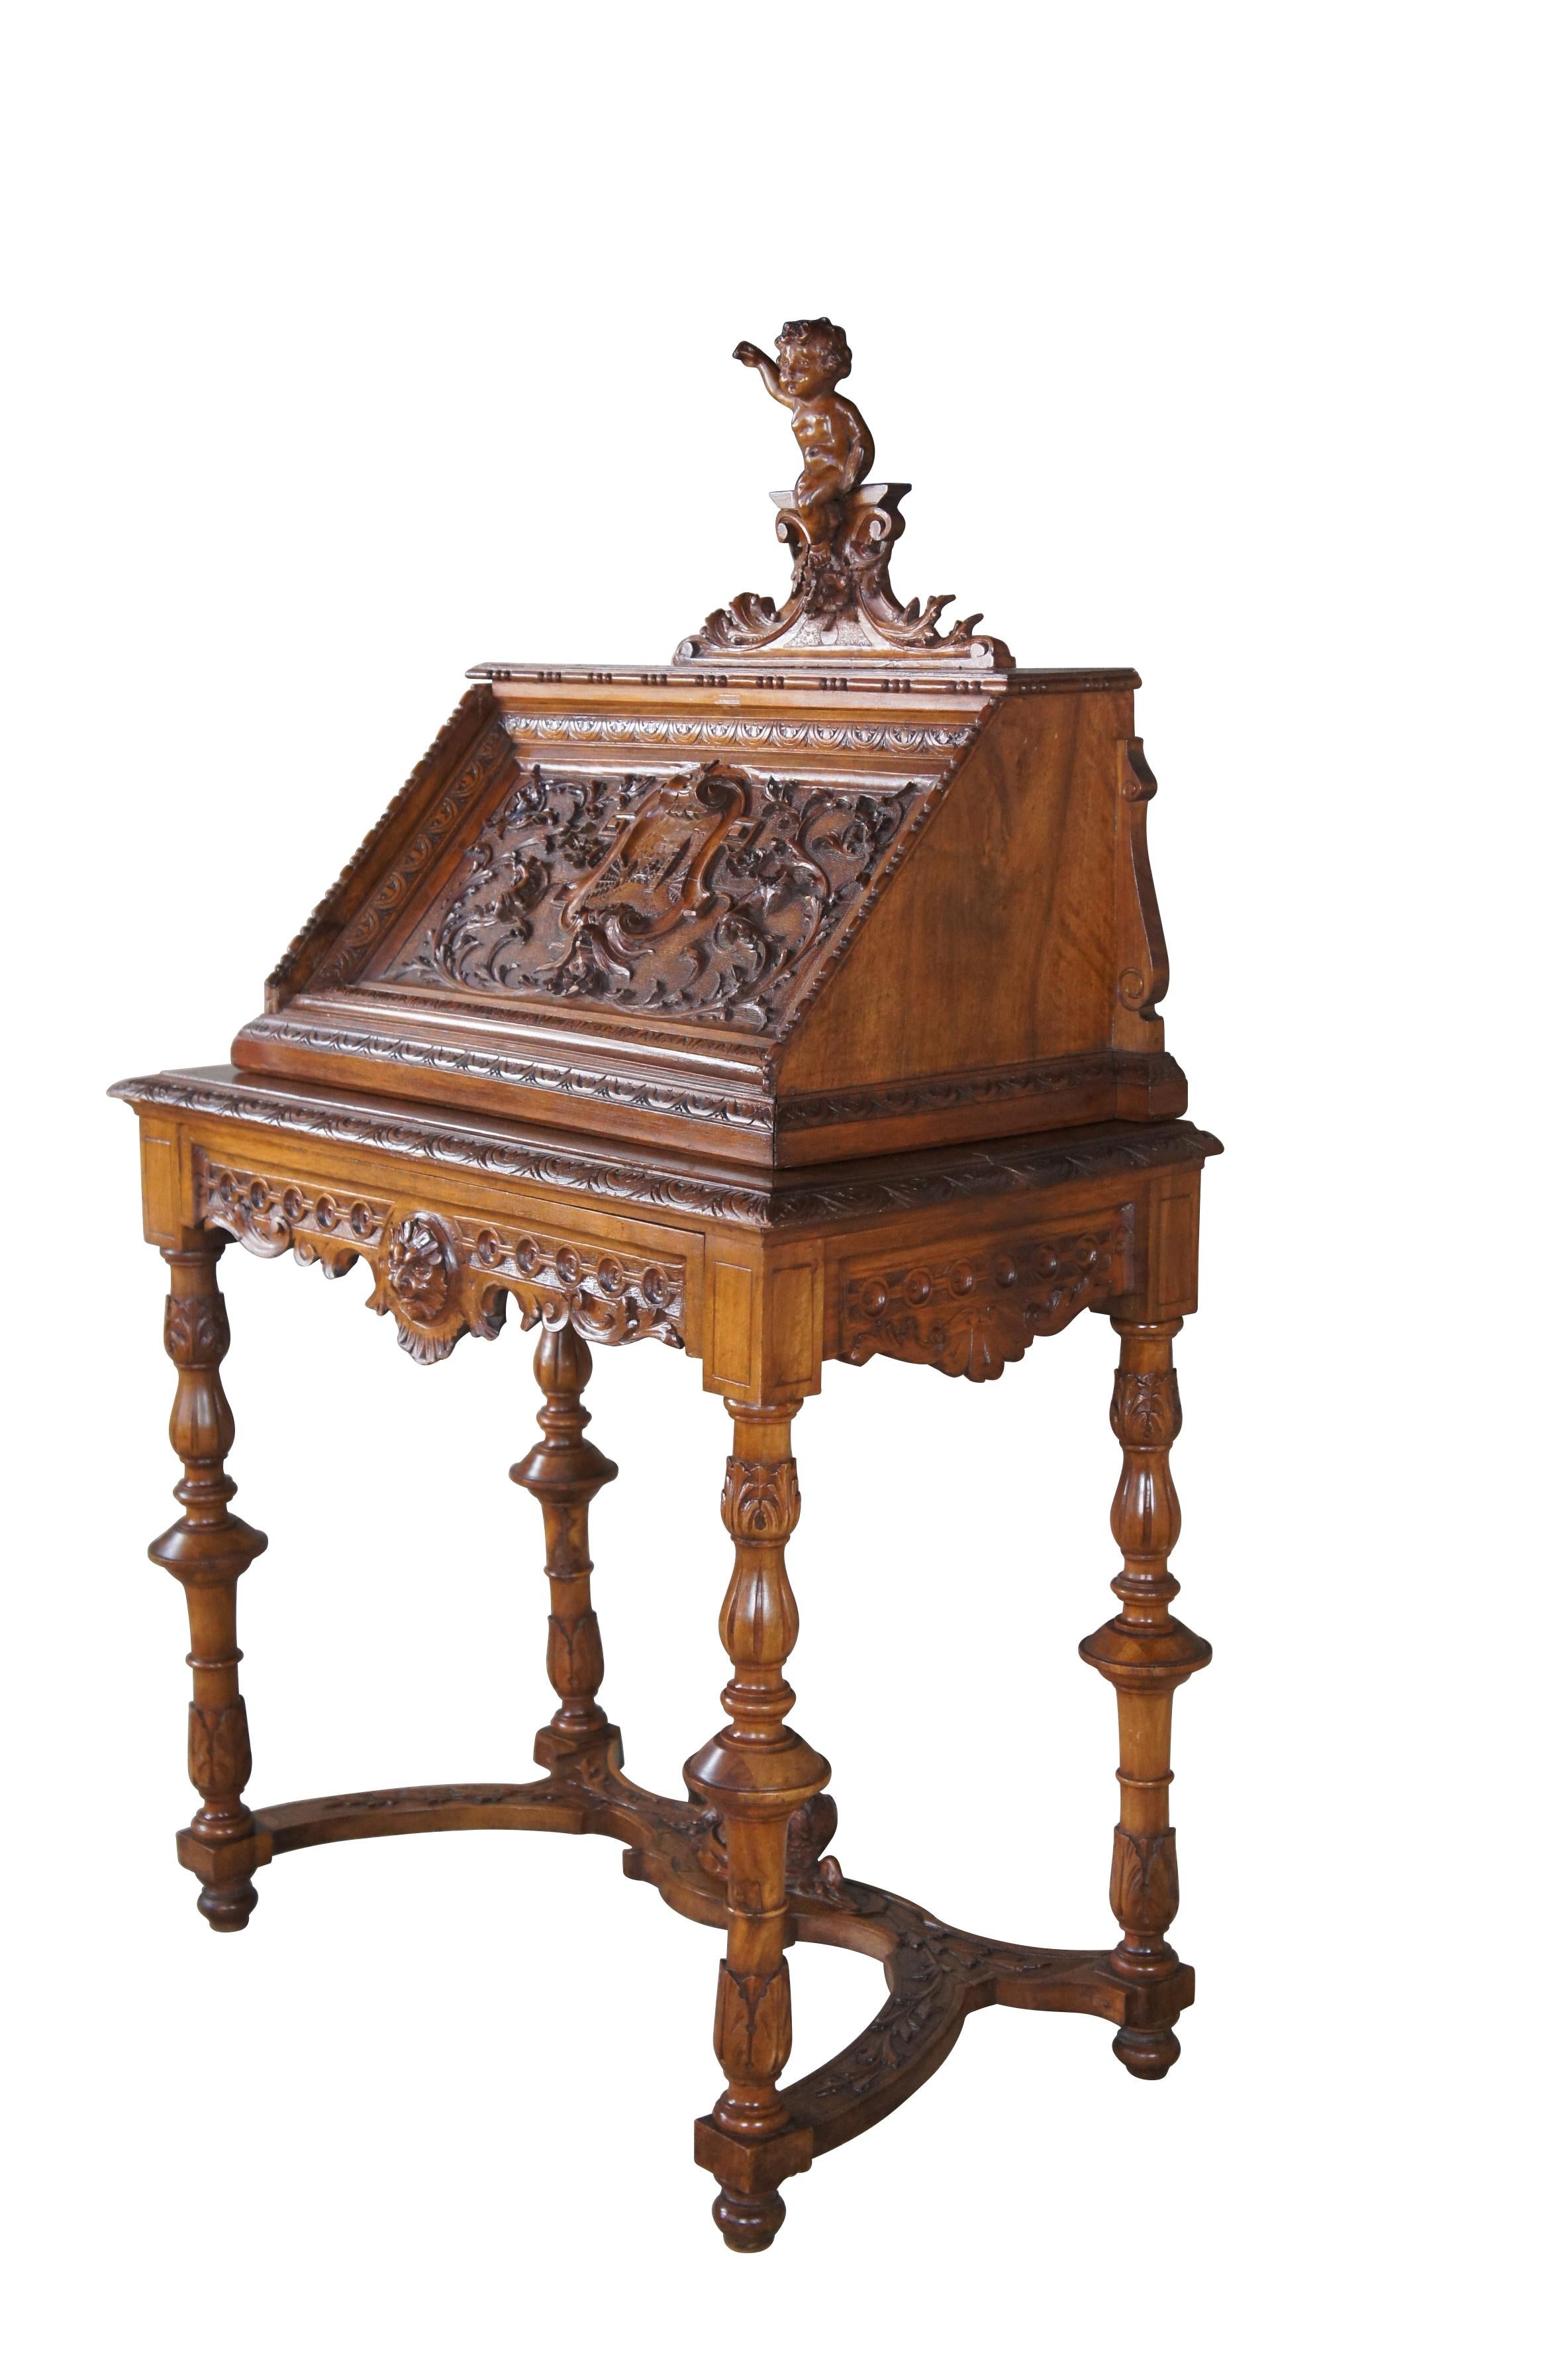 Antiker Neo-Renaissance-Revival-Schreibtisch.  Gefertigt aus Nussbaumholz im klassizistischen Stil mit hochreliefierten figürlichen Schnitzereien von Putten, Nordwindgesichtern und Akanthus- und Blumenmustern.  Der Schreibtisch verfügt über eine